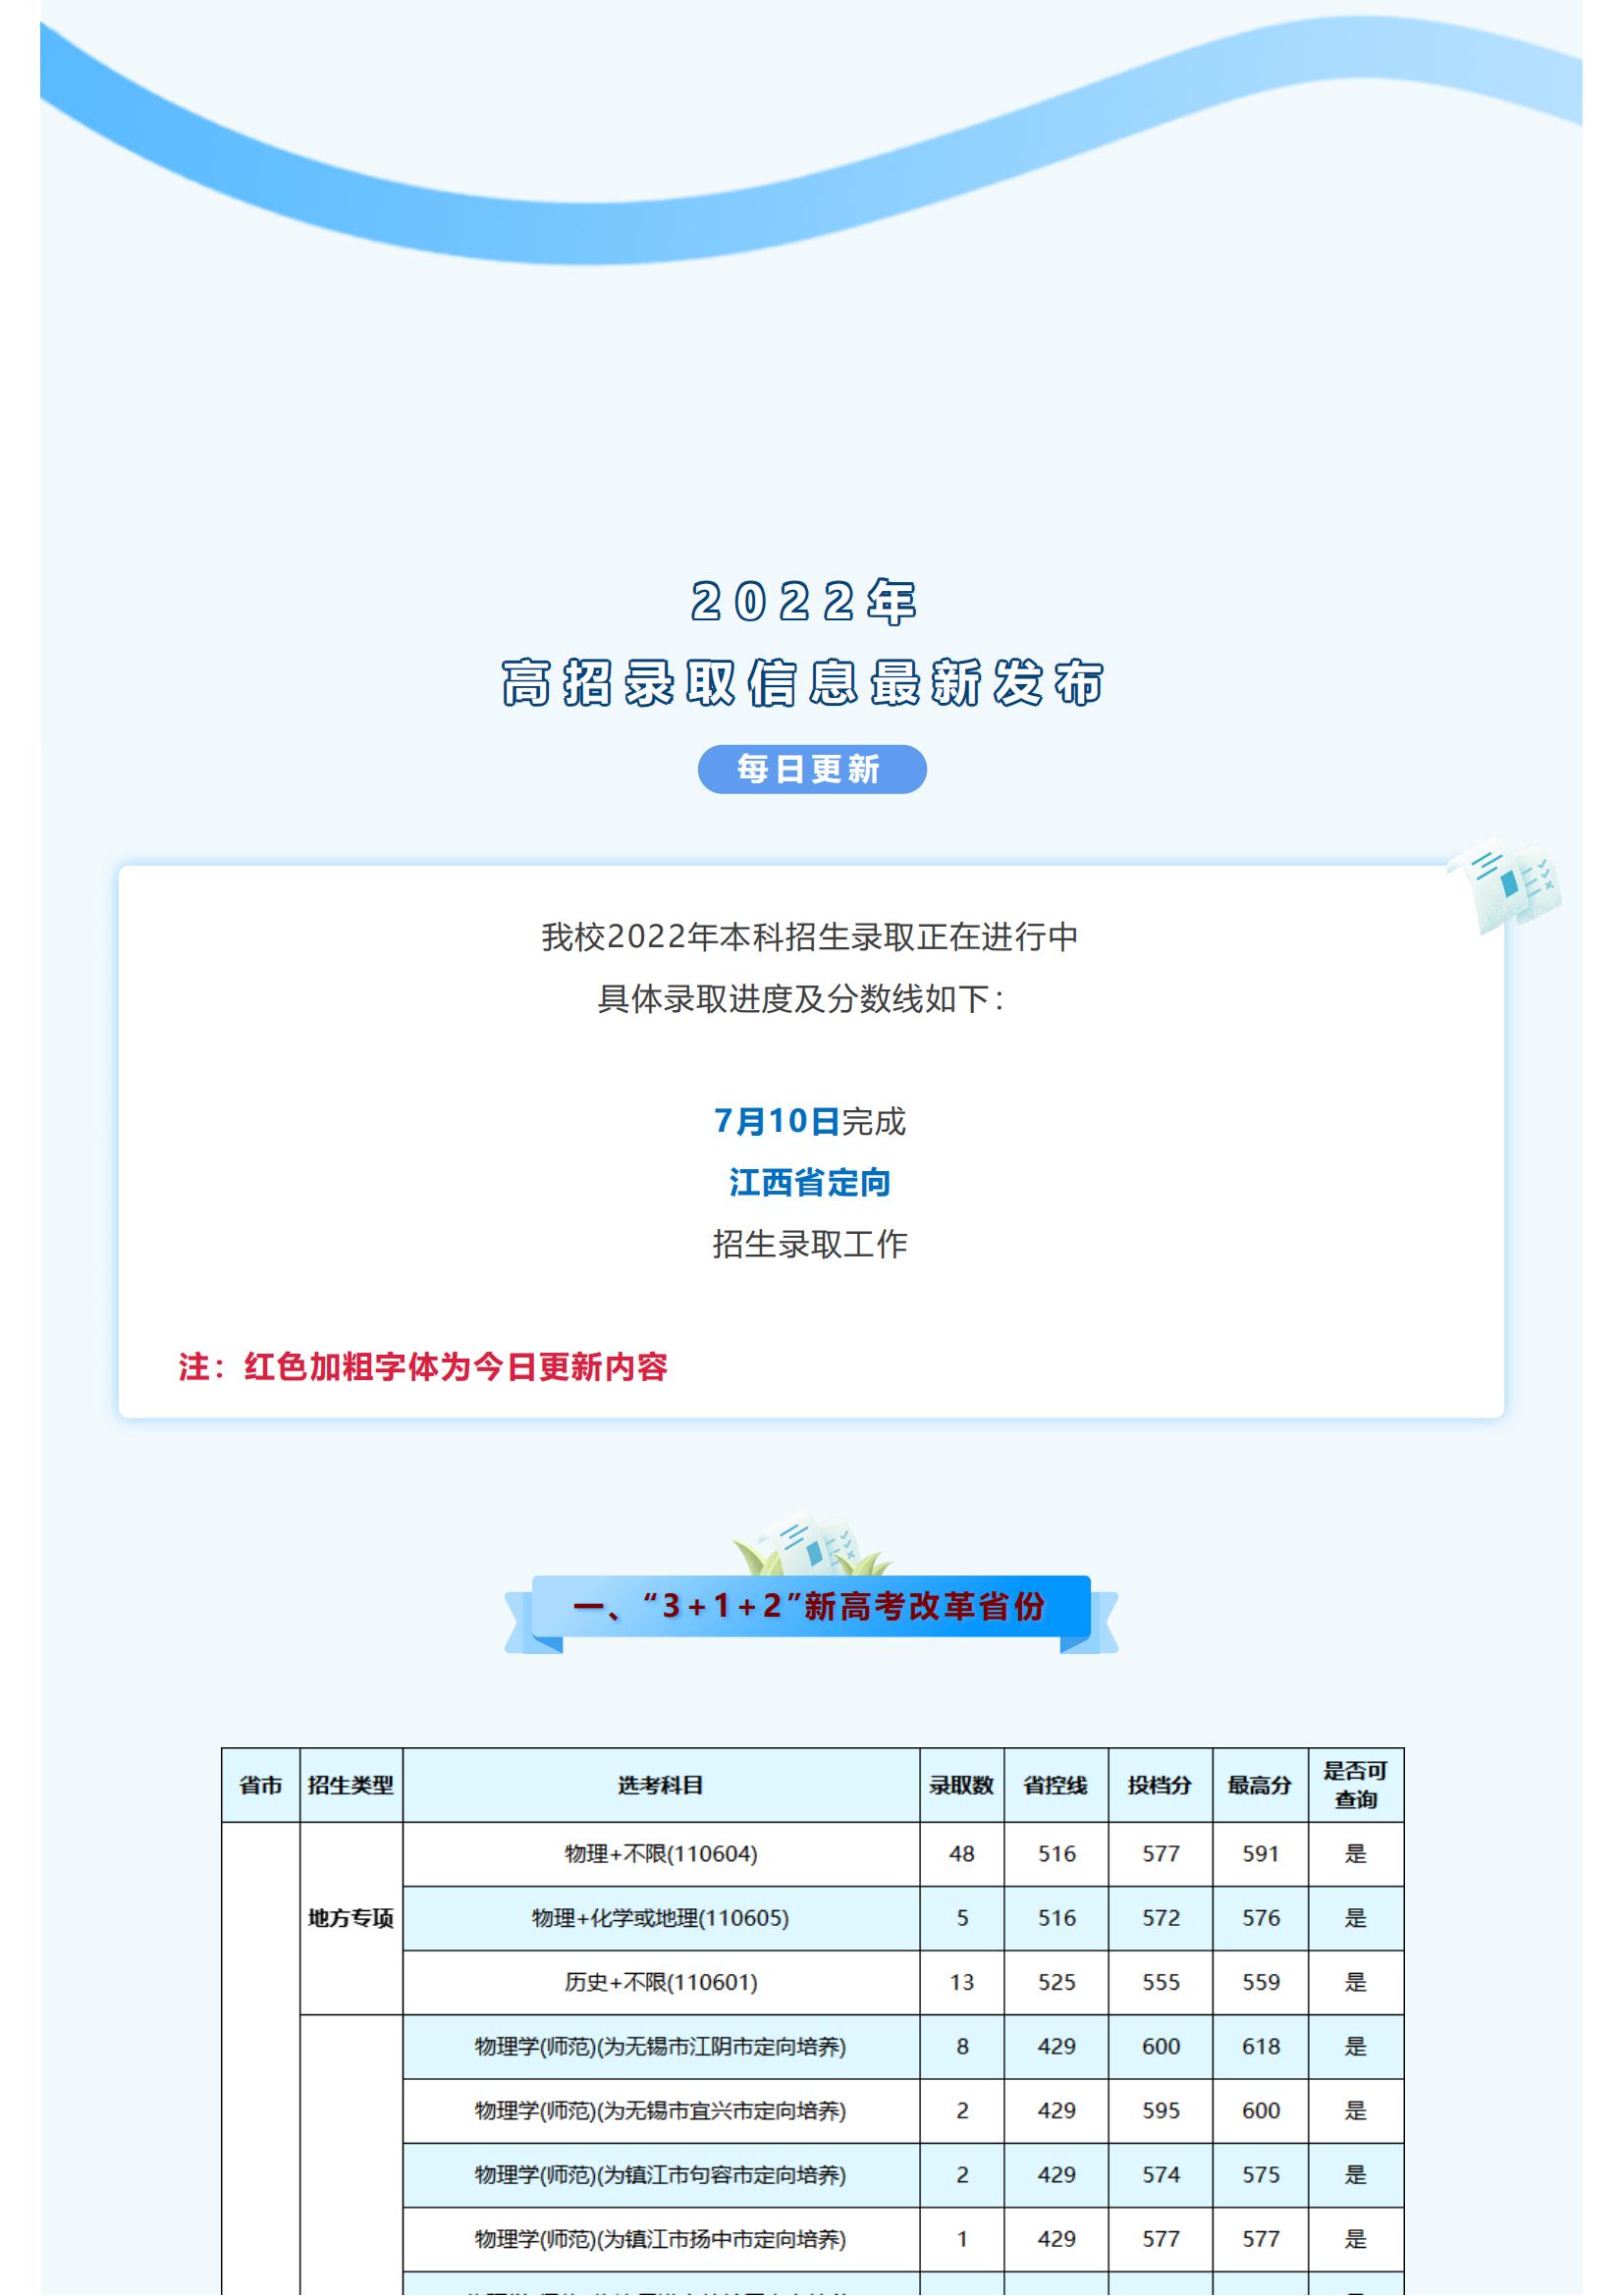 招生快讯 _ 南京信息工程大学2022年录取信息发布（7月10日更新）_01.jpg